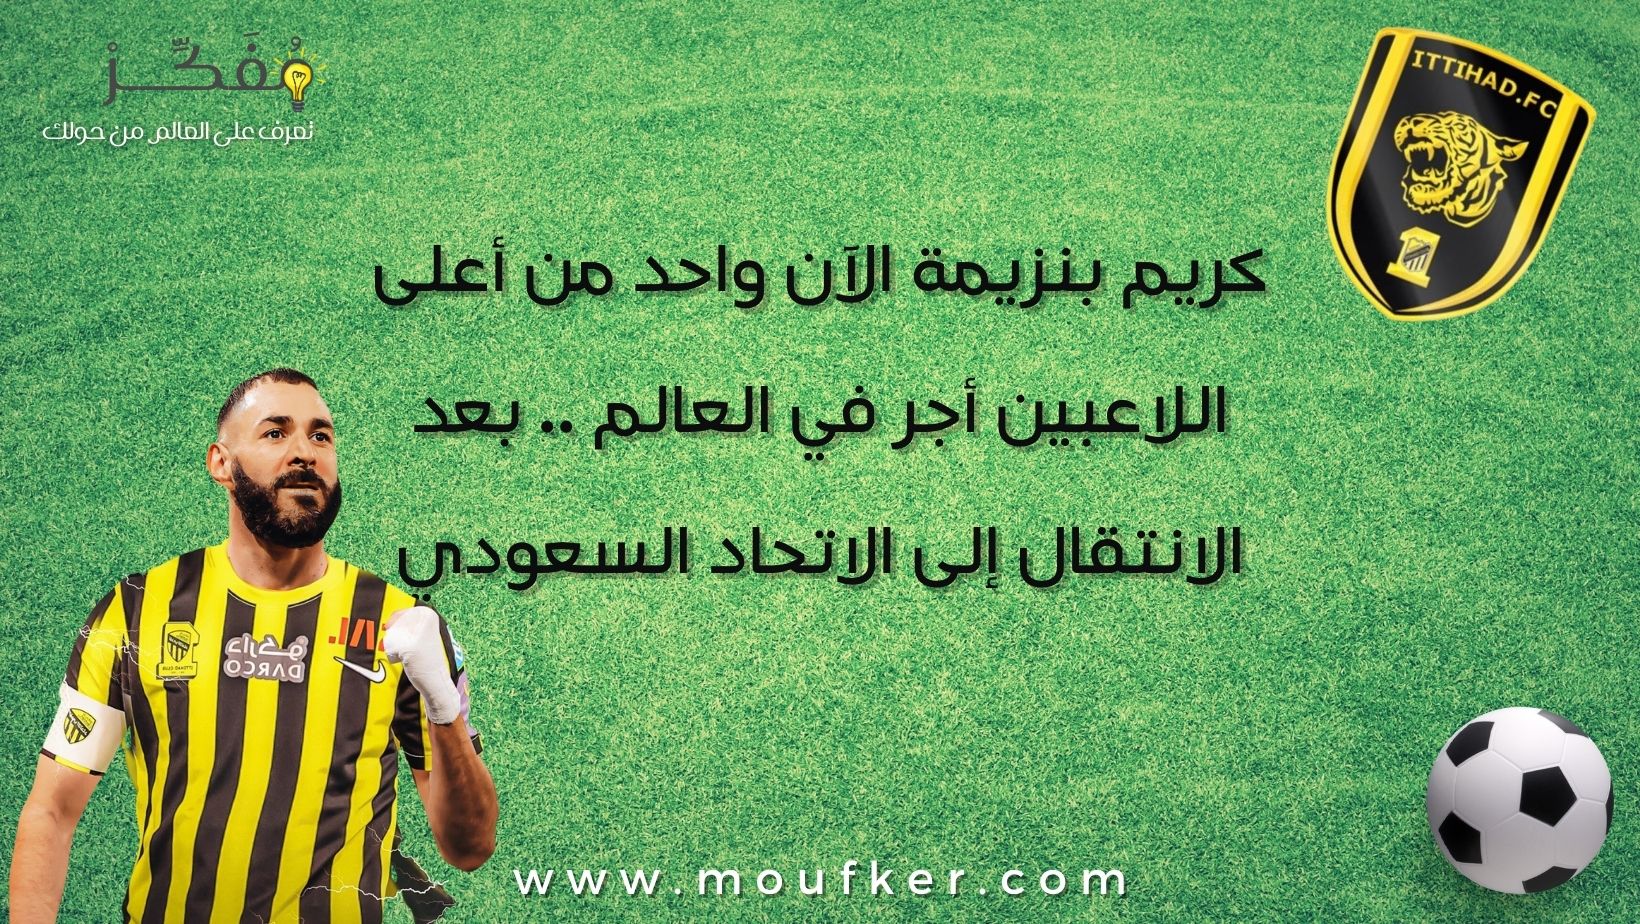 كريم بنزيمة الآن واحد من أعلى اللاعبين أجر في العالم .. بعد الانتقال إلى الاتحاد السعودي